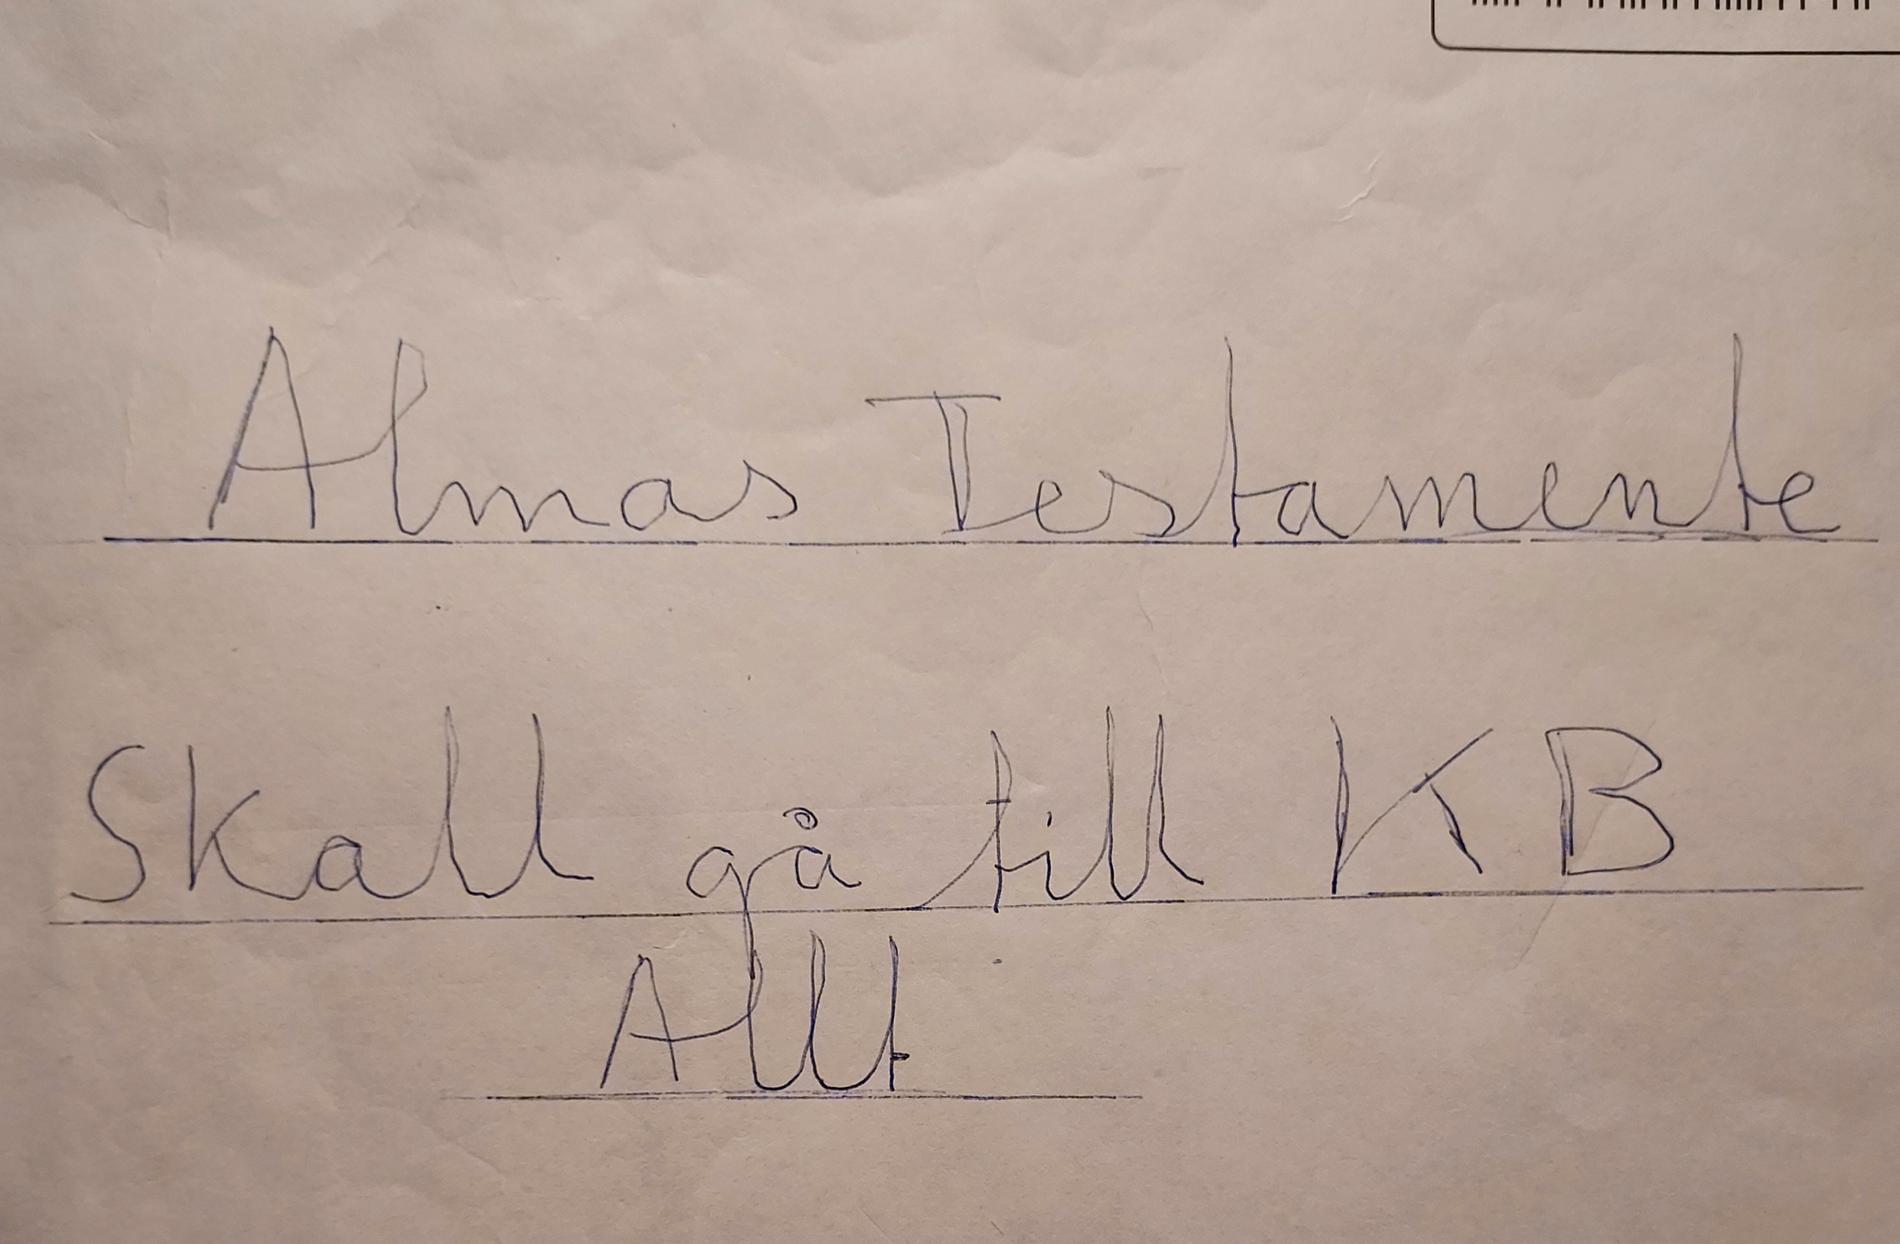 ”Skall gå till KB – Allt”, stod det på kuvertet där Lennart Alm förvarade sitt testamente.